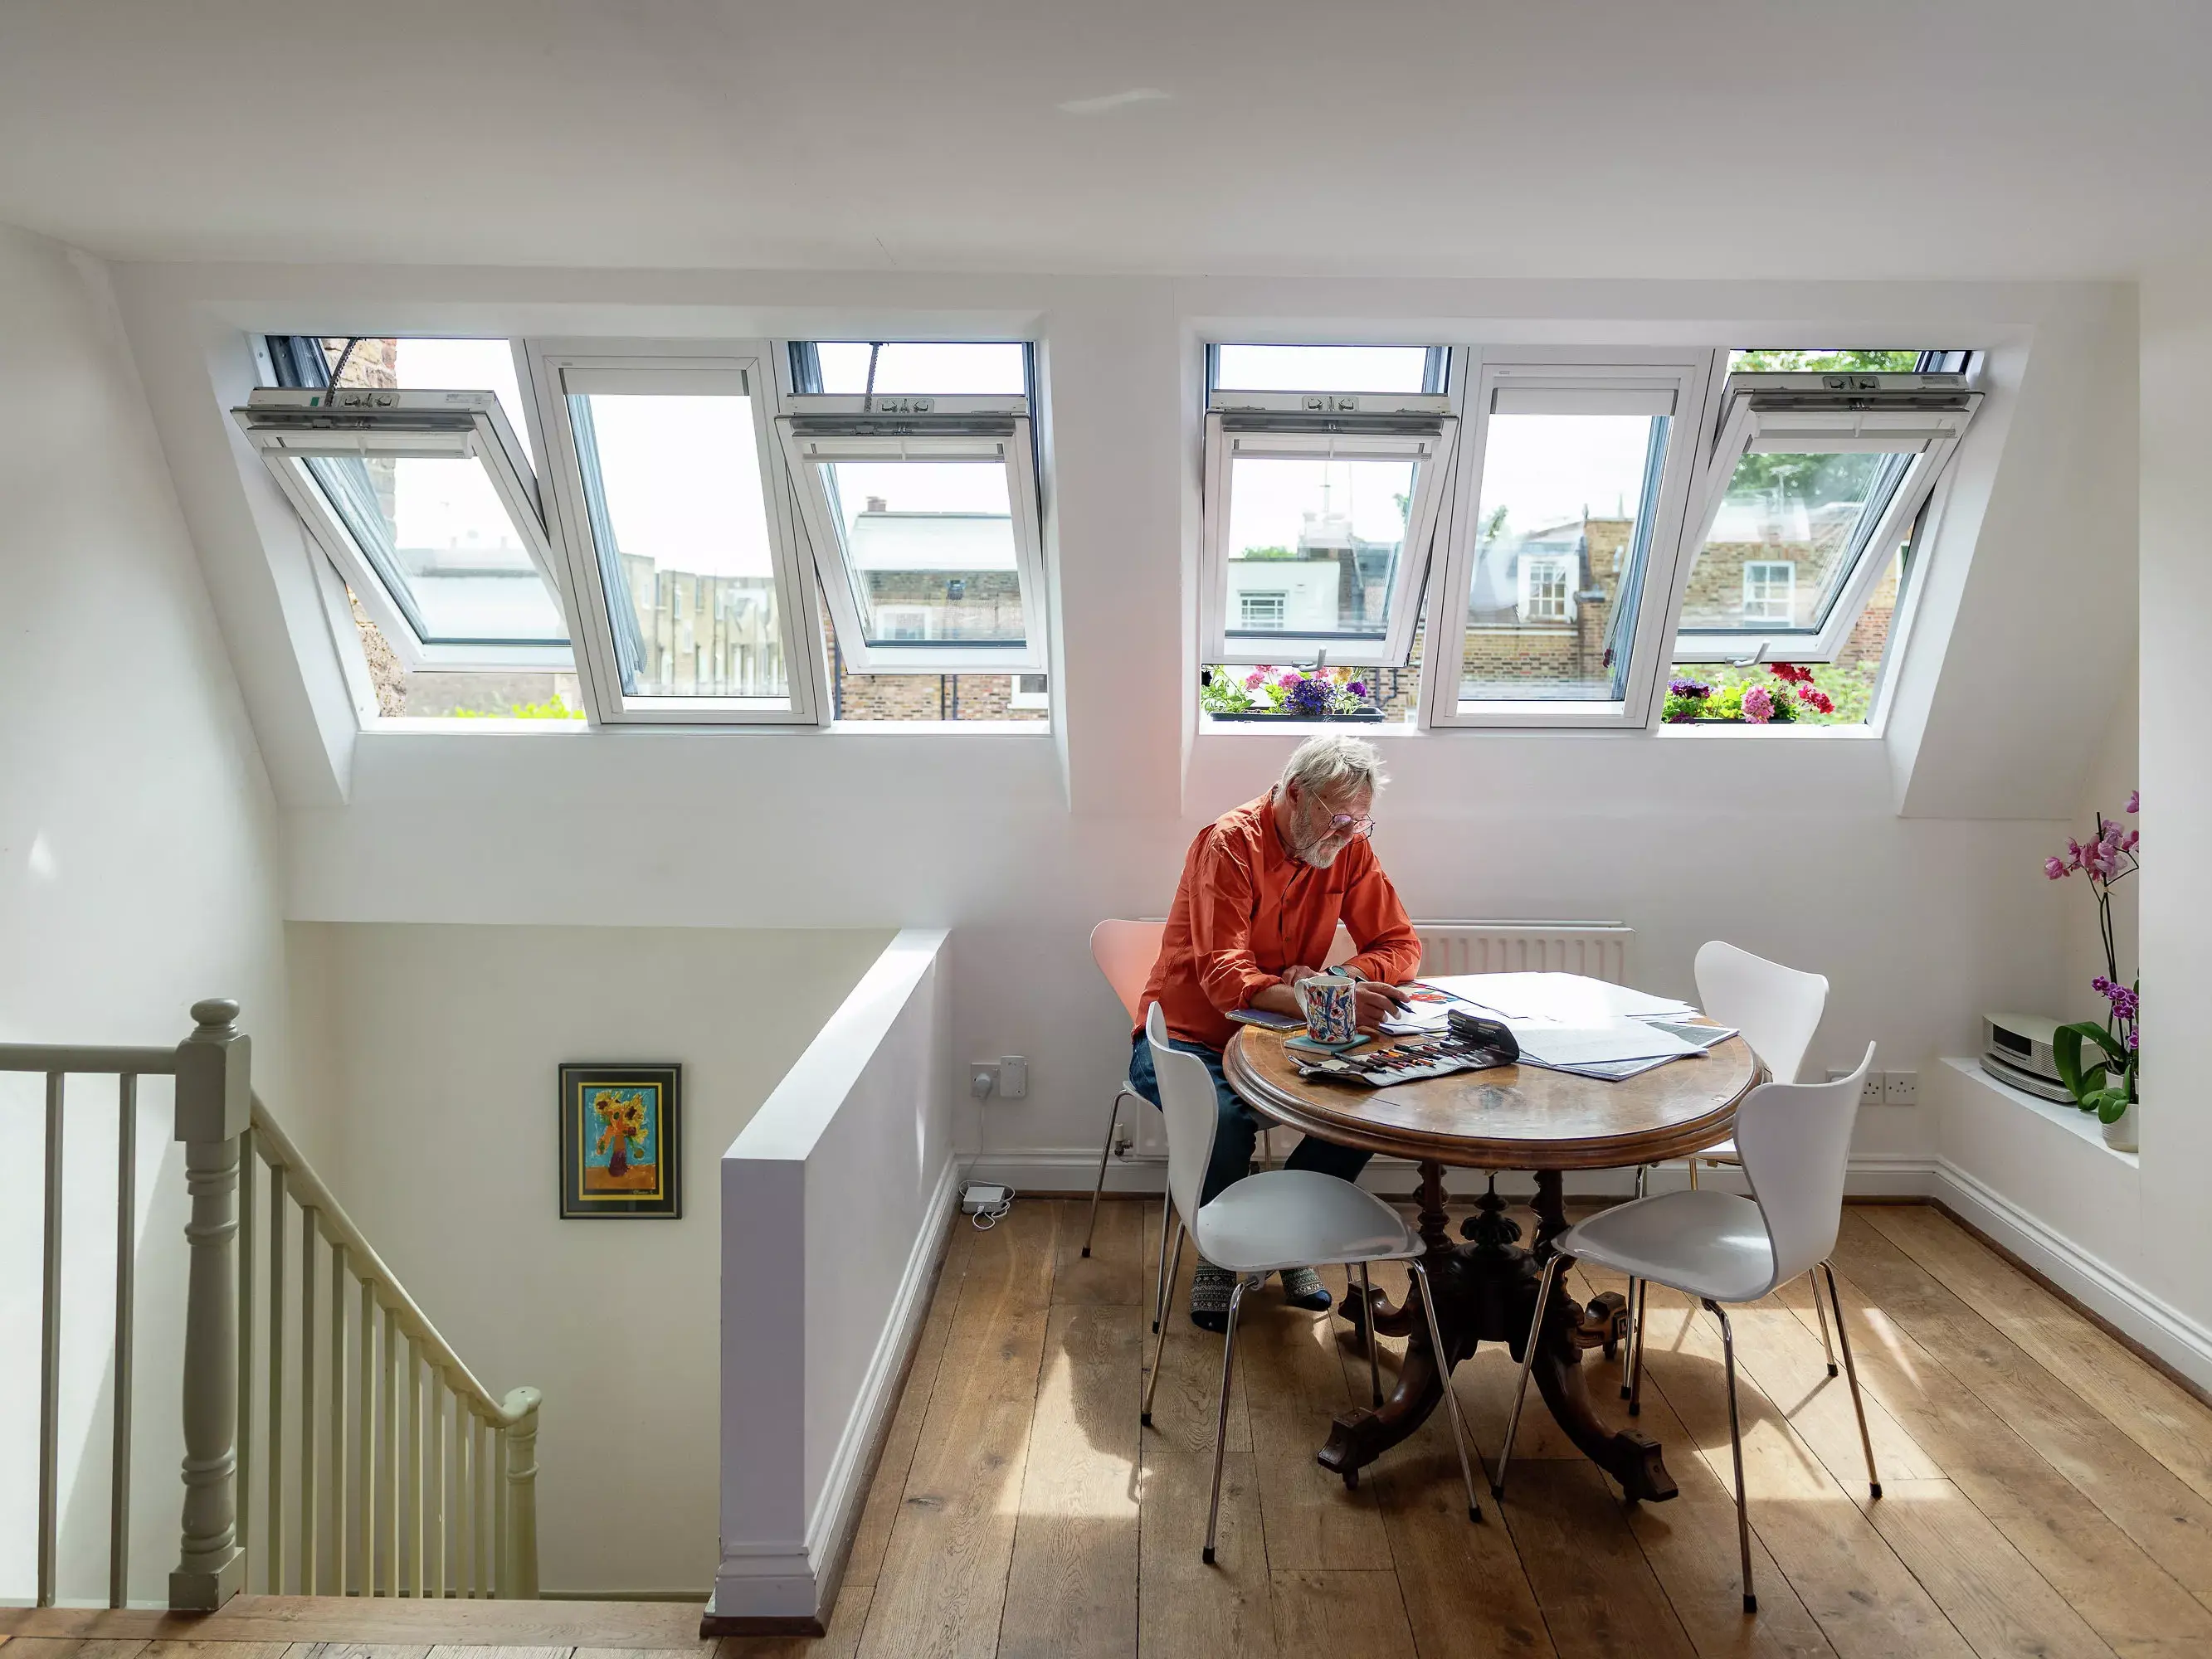 Espace repas confortable dans le comble avec lumière naturelle provenant des fenêtres de toit VELUX et une table ronde.